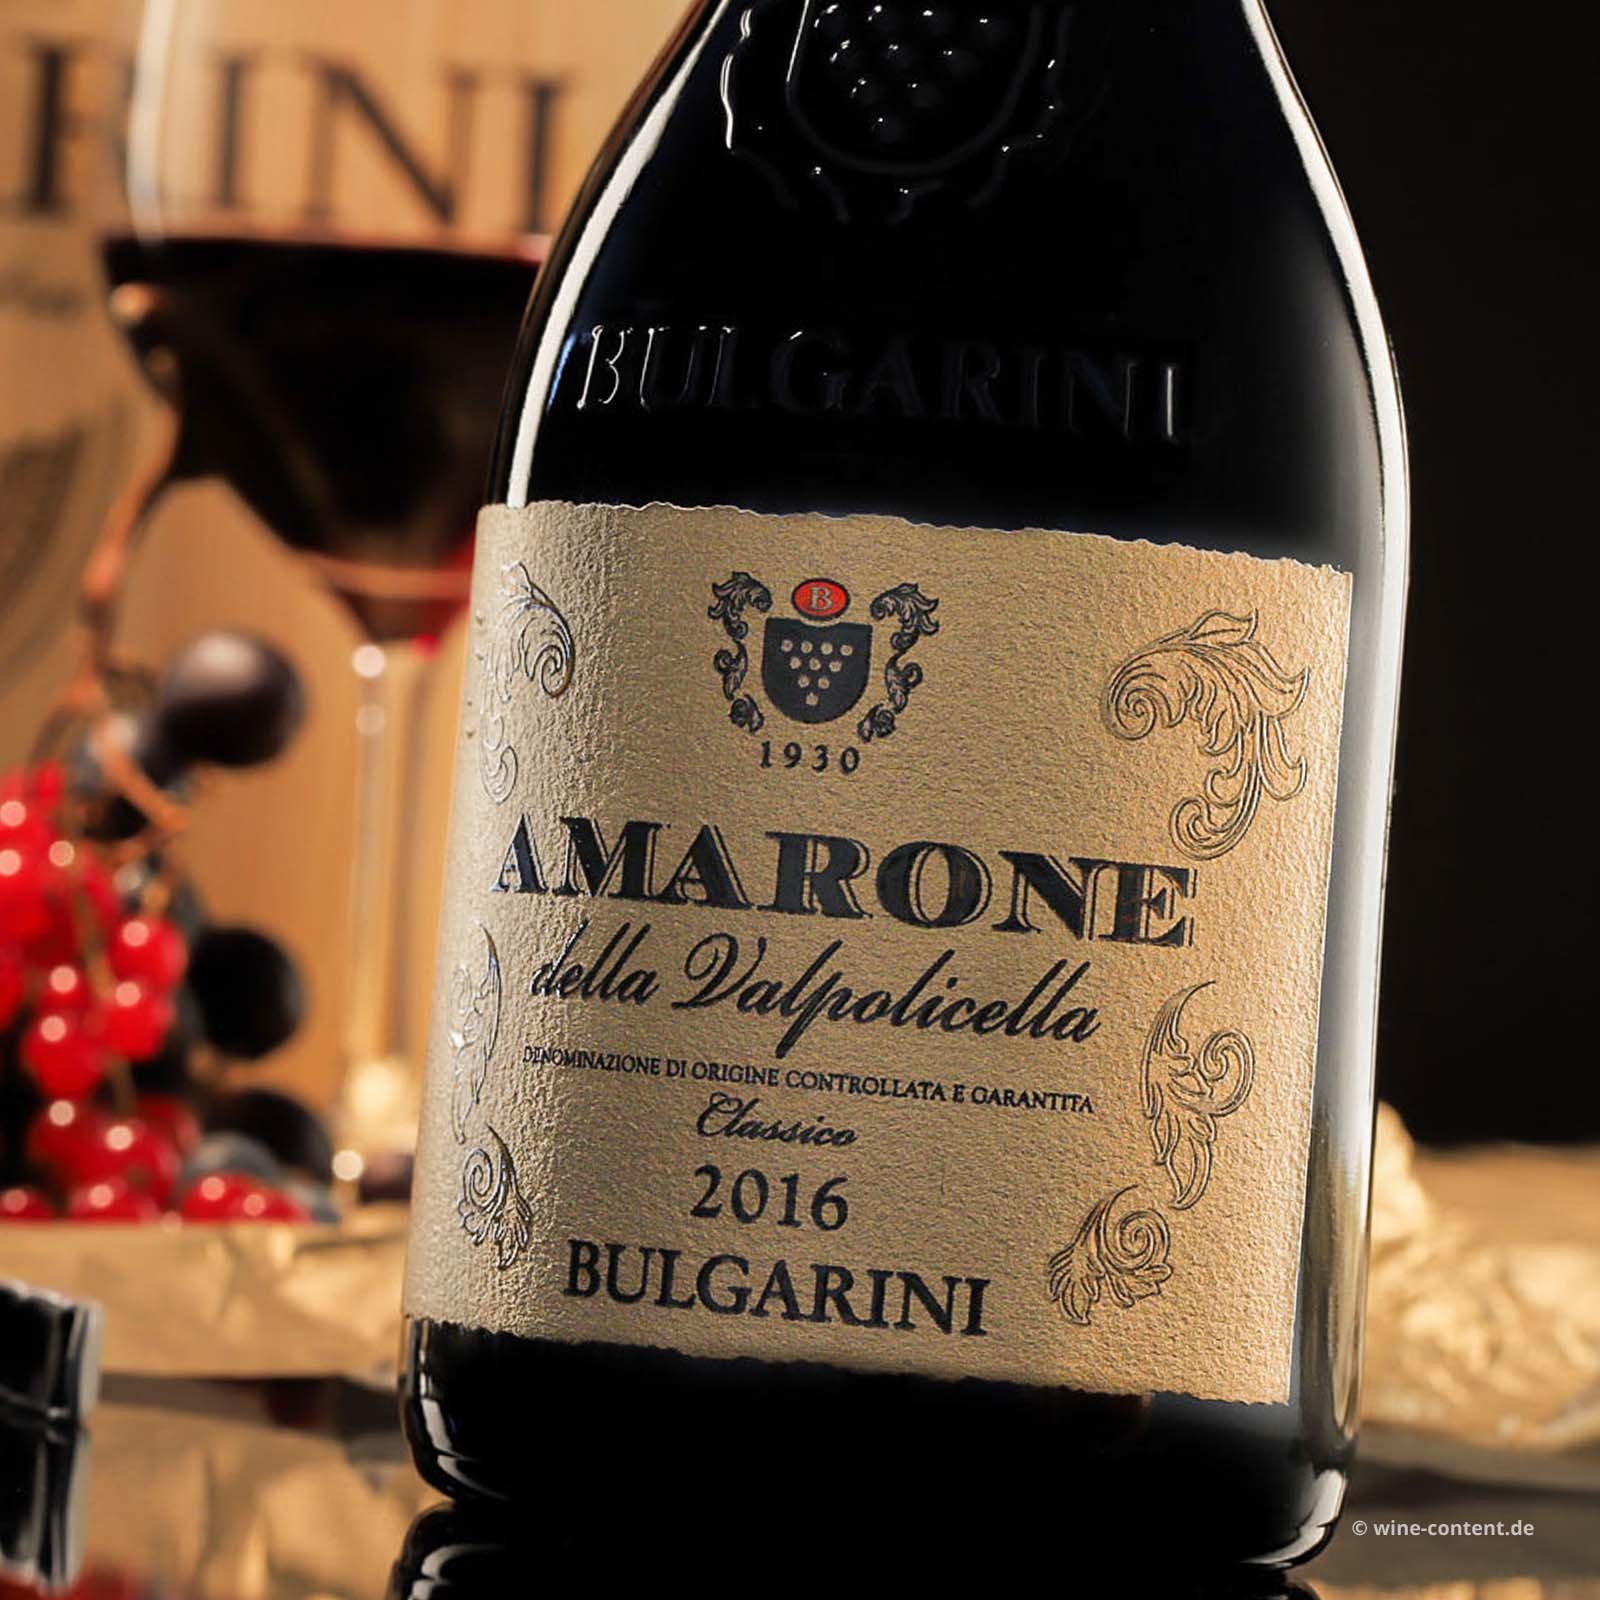 Amarone Classico 2016 Bulgarini